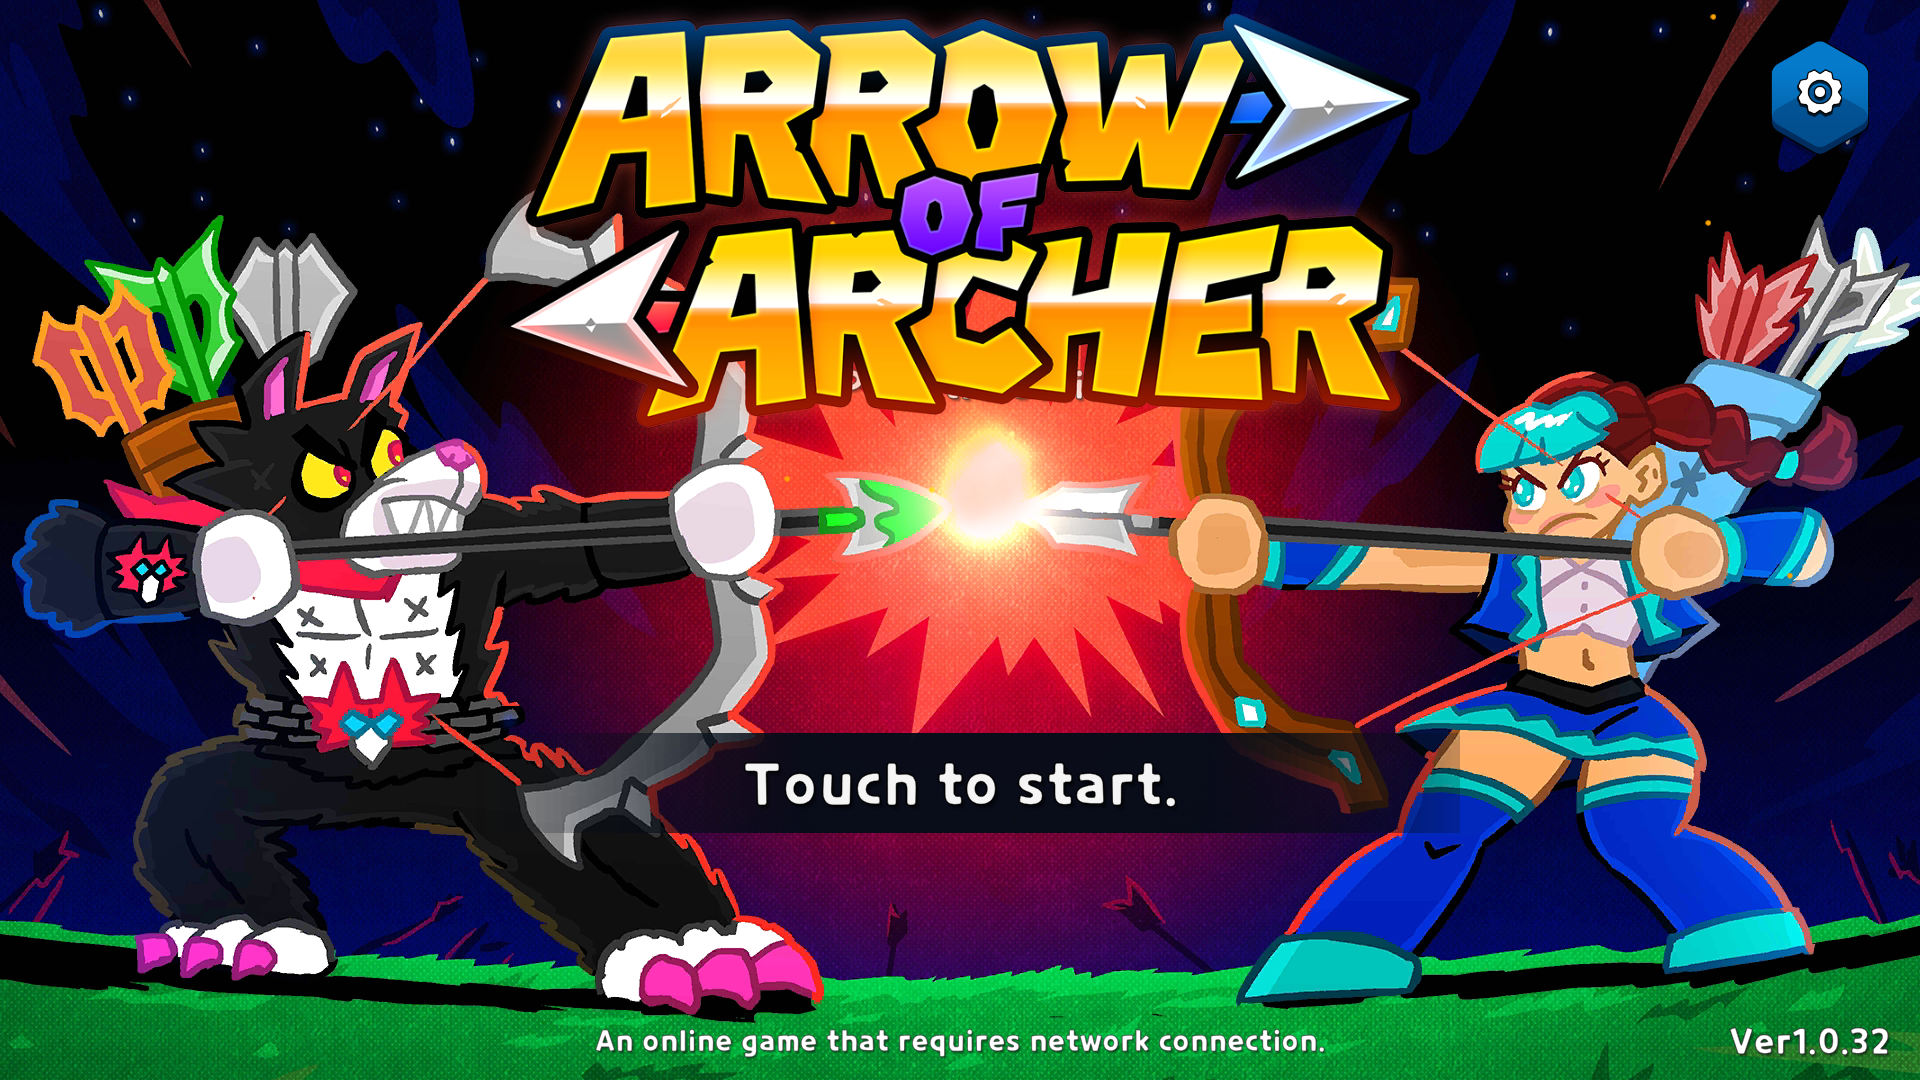 Arrow of Archer (AoA)